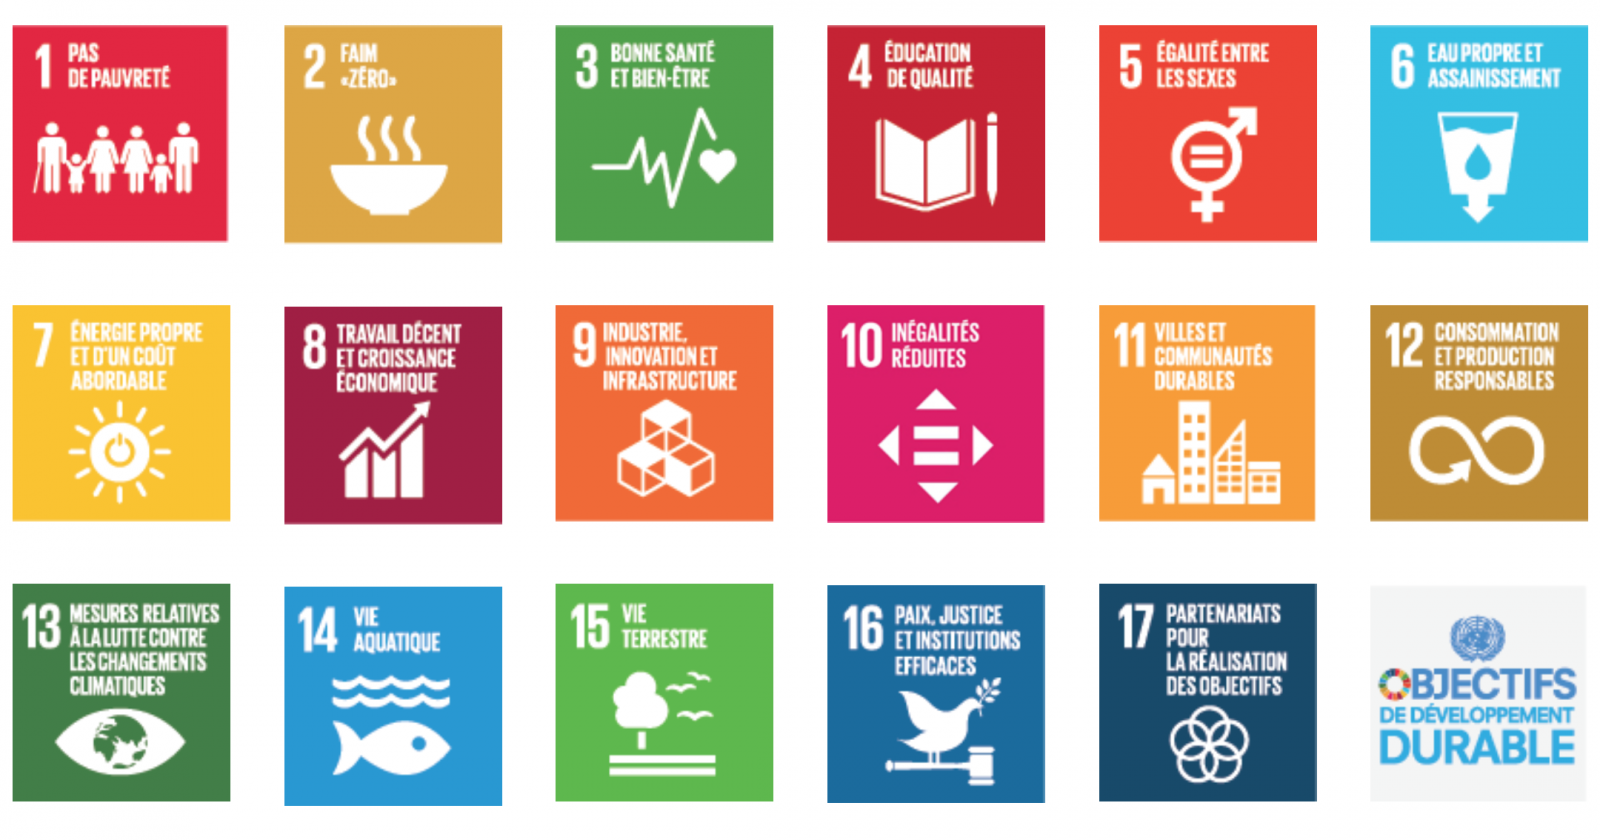 Les 17 objectifs de développement durable (ODD) à atteindre d’ici 2030.